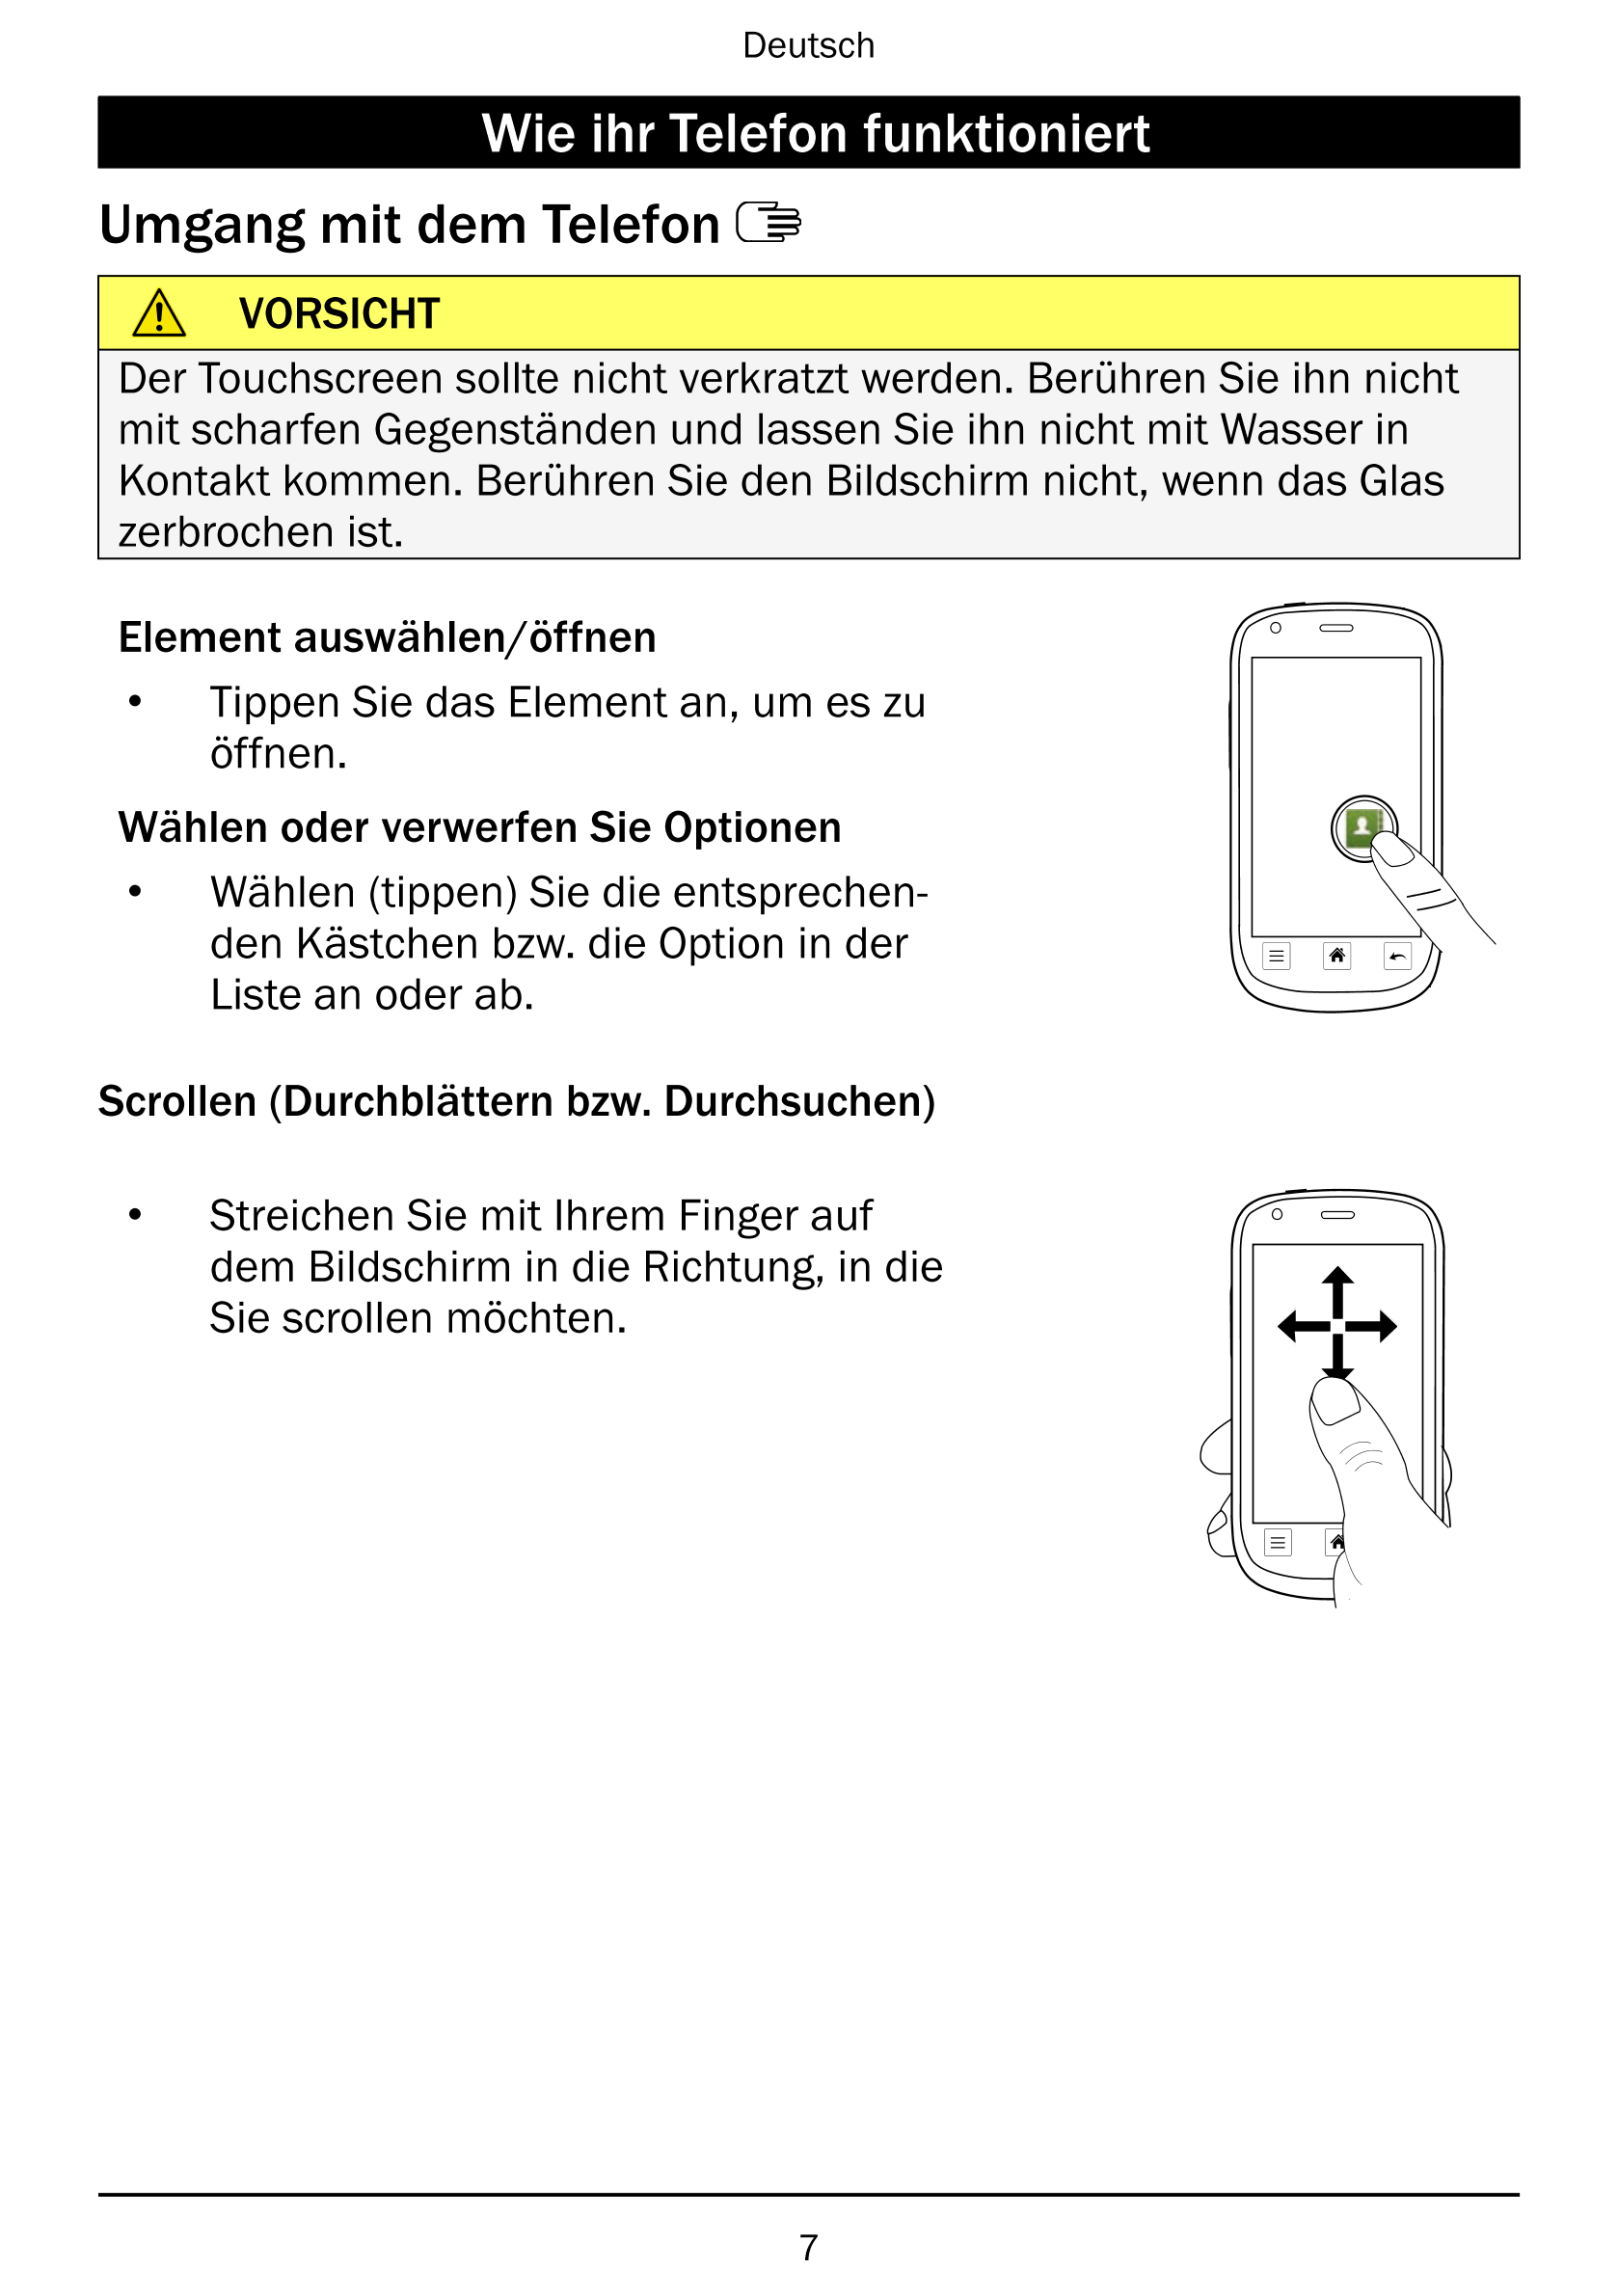 Deutsch
Wie ihr Telefon funktioniert
Umgang mit dem Telefon
VORSICHT
Der Touchscreen sollte nicht verkratzt werden. Berühren Sie